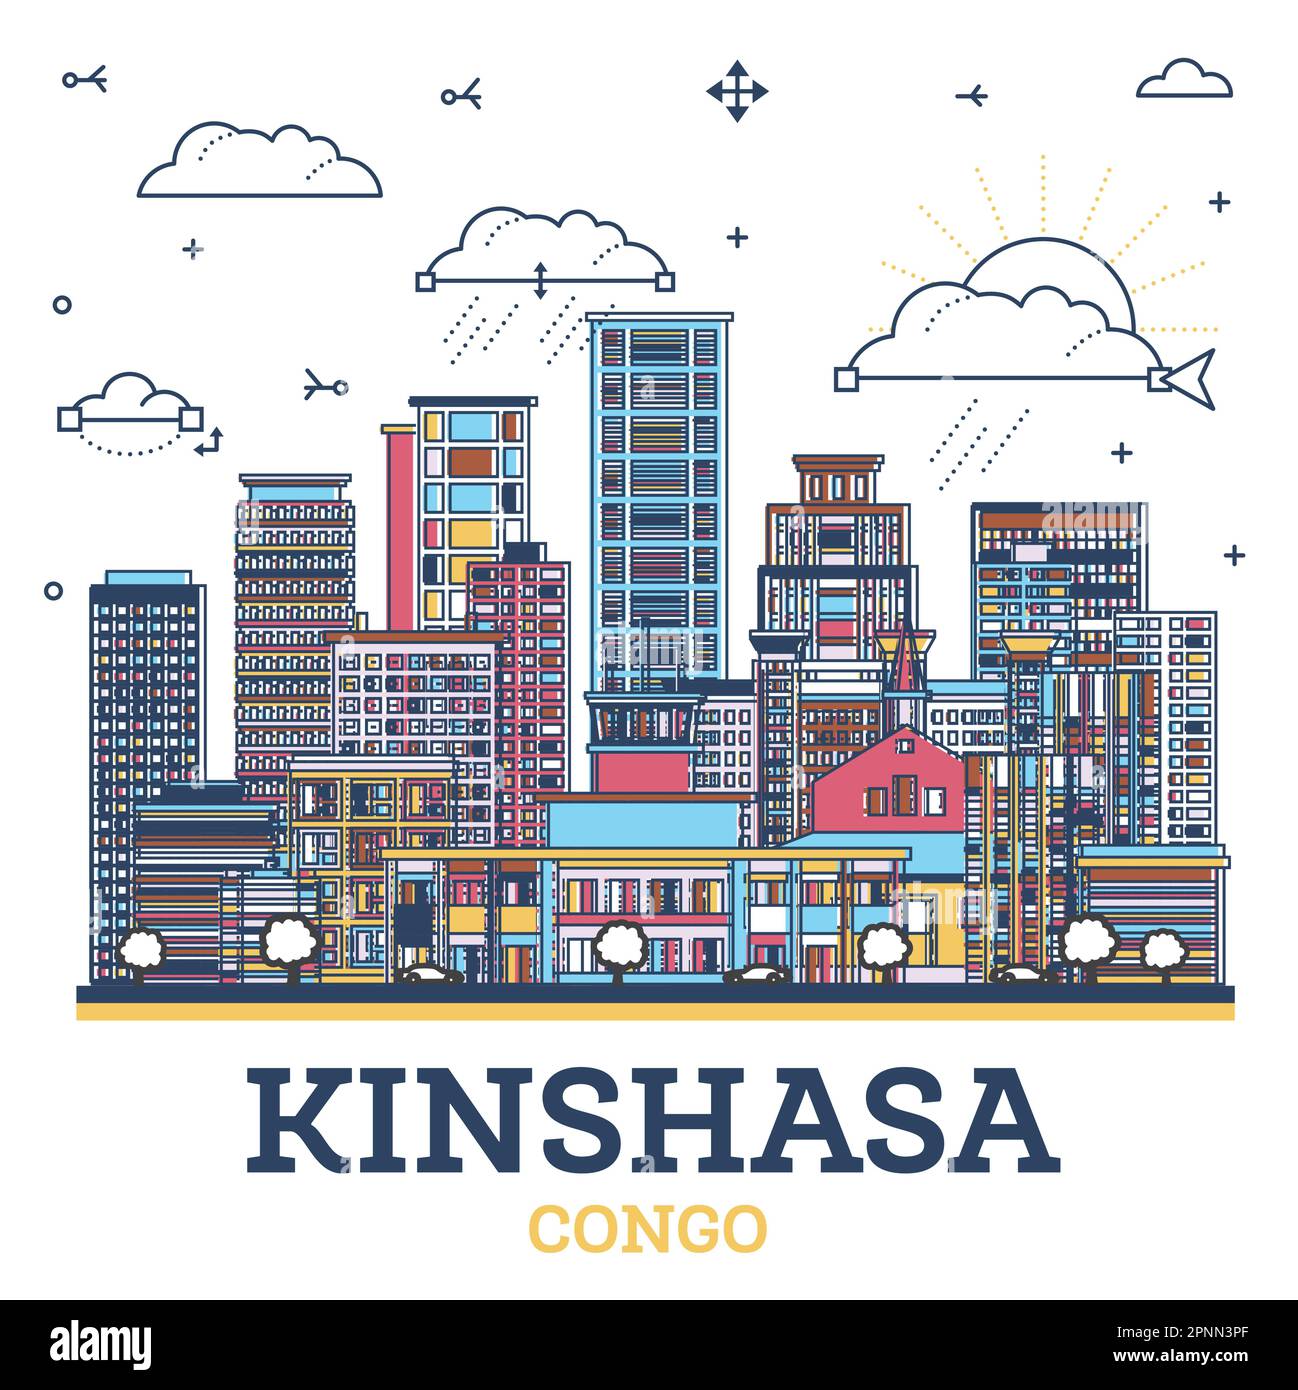 Skizzieren Sie Kinshasa Congo City Skyline mit modernen farbigen Gebäuden isoliert auf Weiß. Vektorgrafik. Kinshasa Afrika Stadtbild mit Wahrzeichen. Stock Vektor